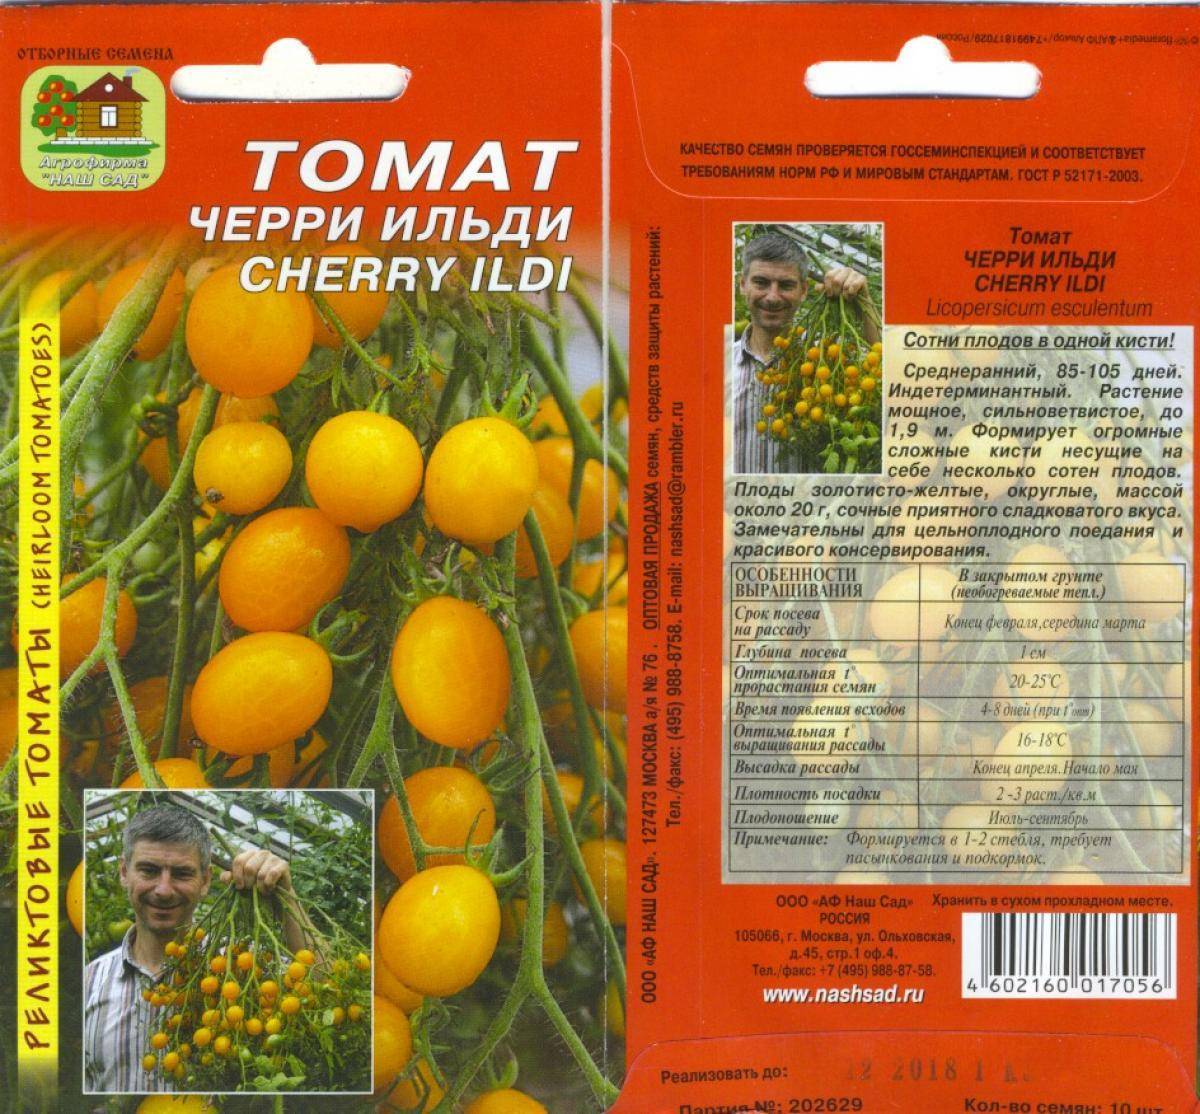 ᐉ томат "линда": описание помидор черри и гибридного сорта "линда f1", характеристики и фото - orensad198.ru